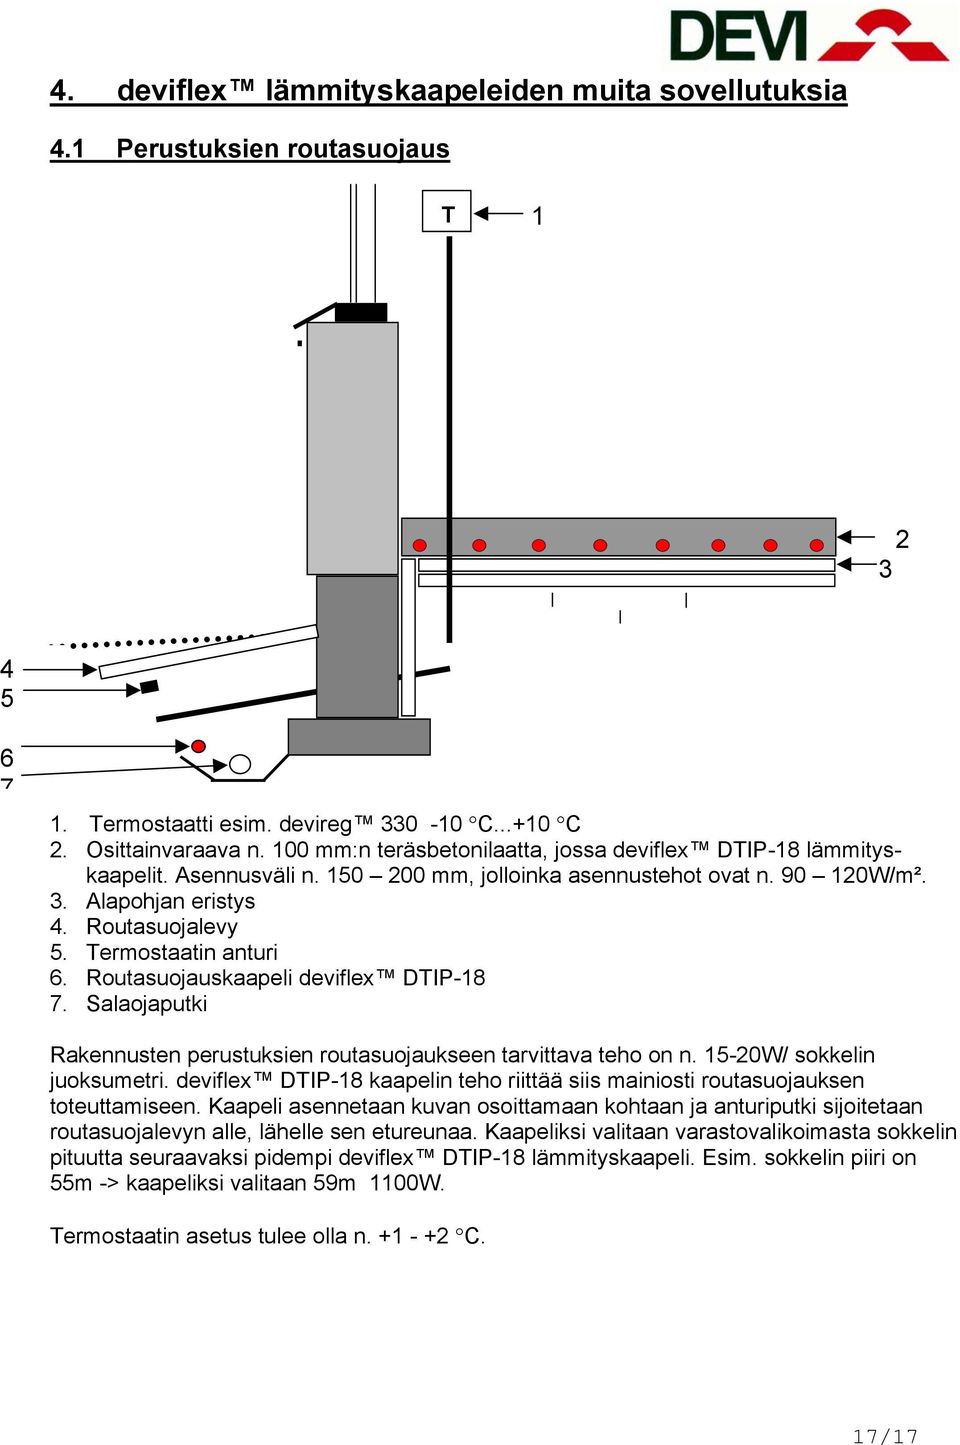 Termostaatin anturi 6. Routasuojauskaapeli deviflex DTIP-18 7. Salaojaputki Rakennusten perustuksien routasuojaukseen tarvittava teho on n. 15-20W/ sokkelin juoksumetri.